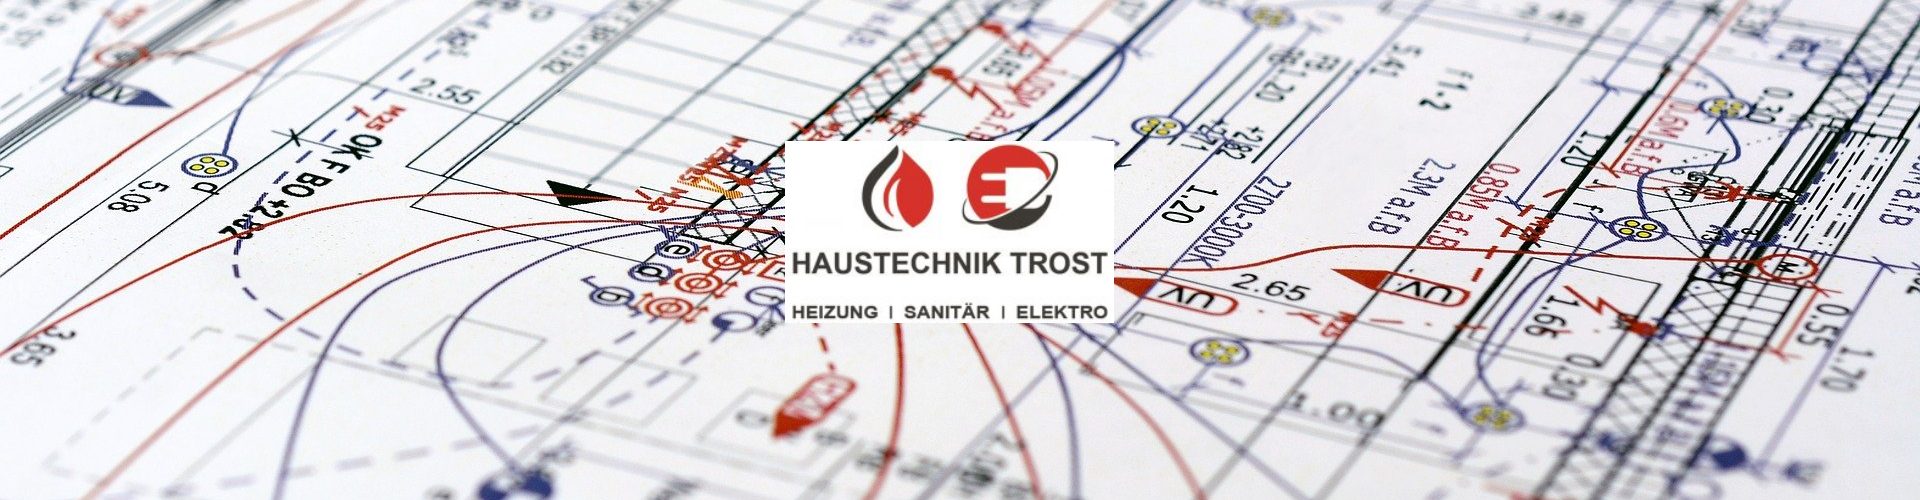 Logo_ht-trost_banner